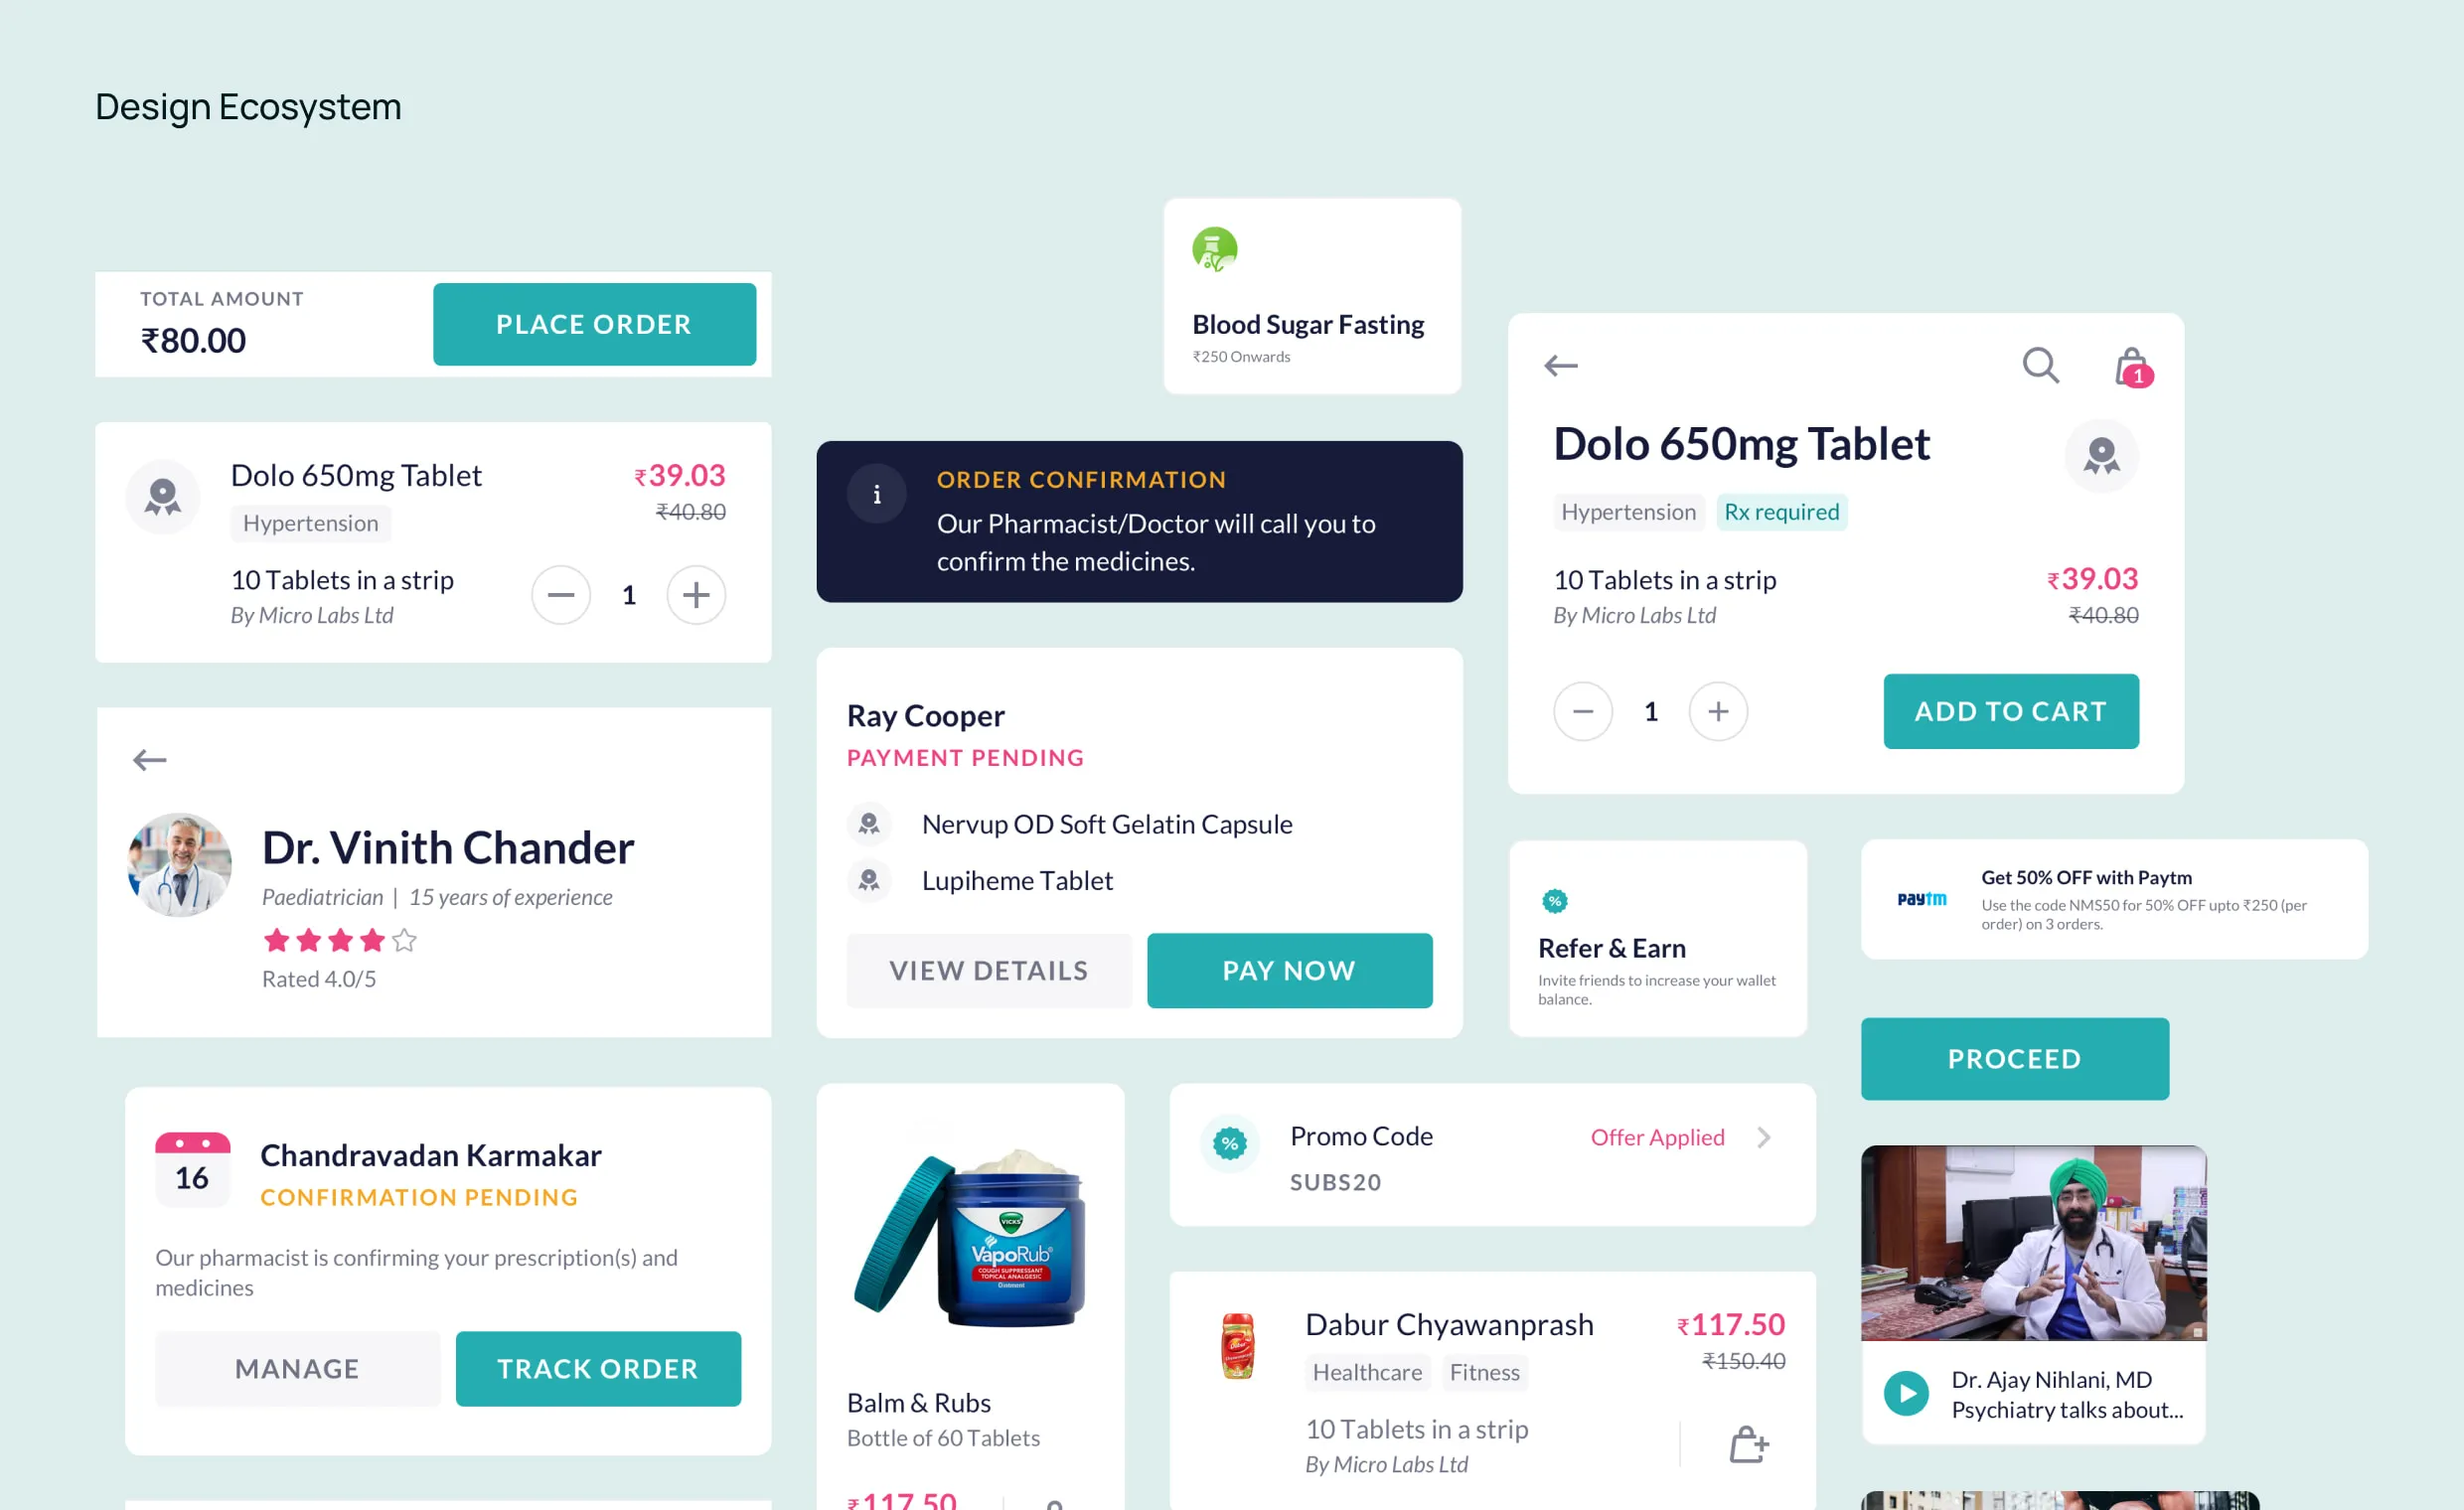 Netmeds App Redesign by Bruvvv - Enhancing Pharma E-Commerce Experience